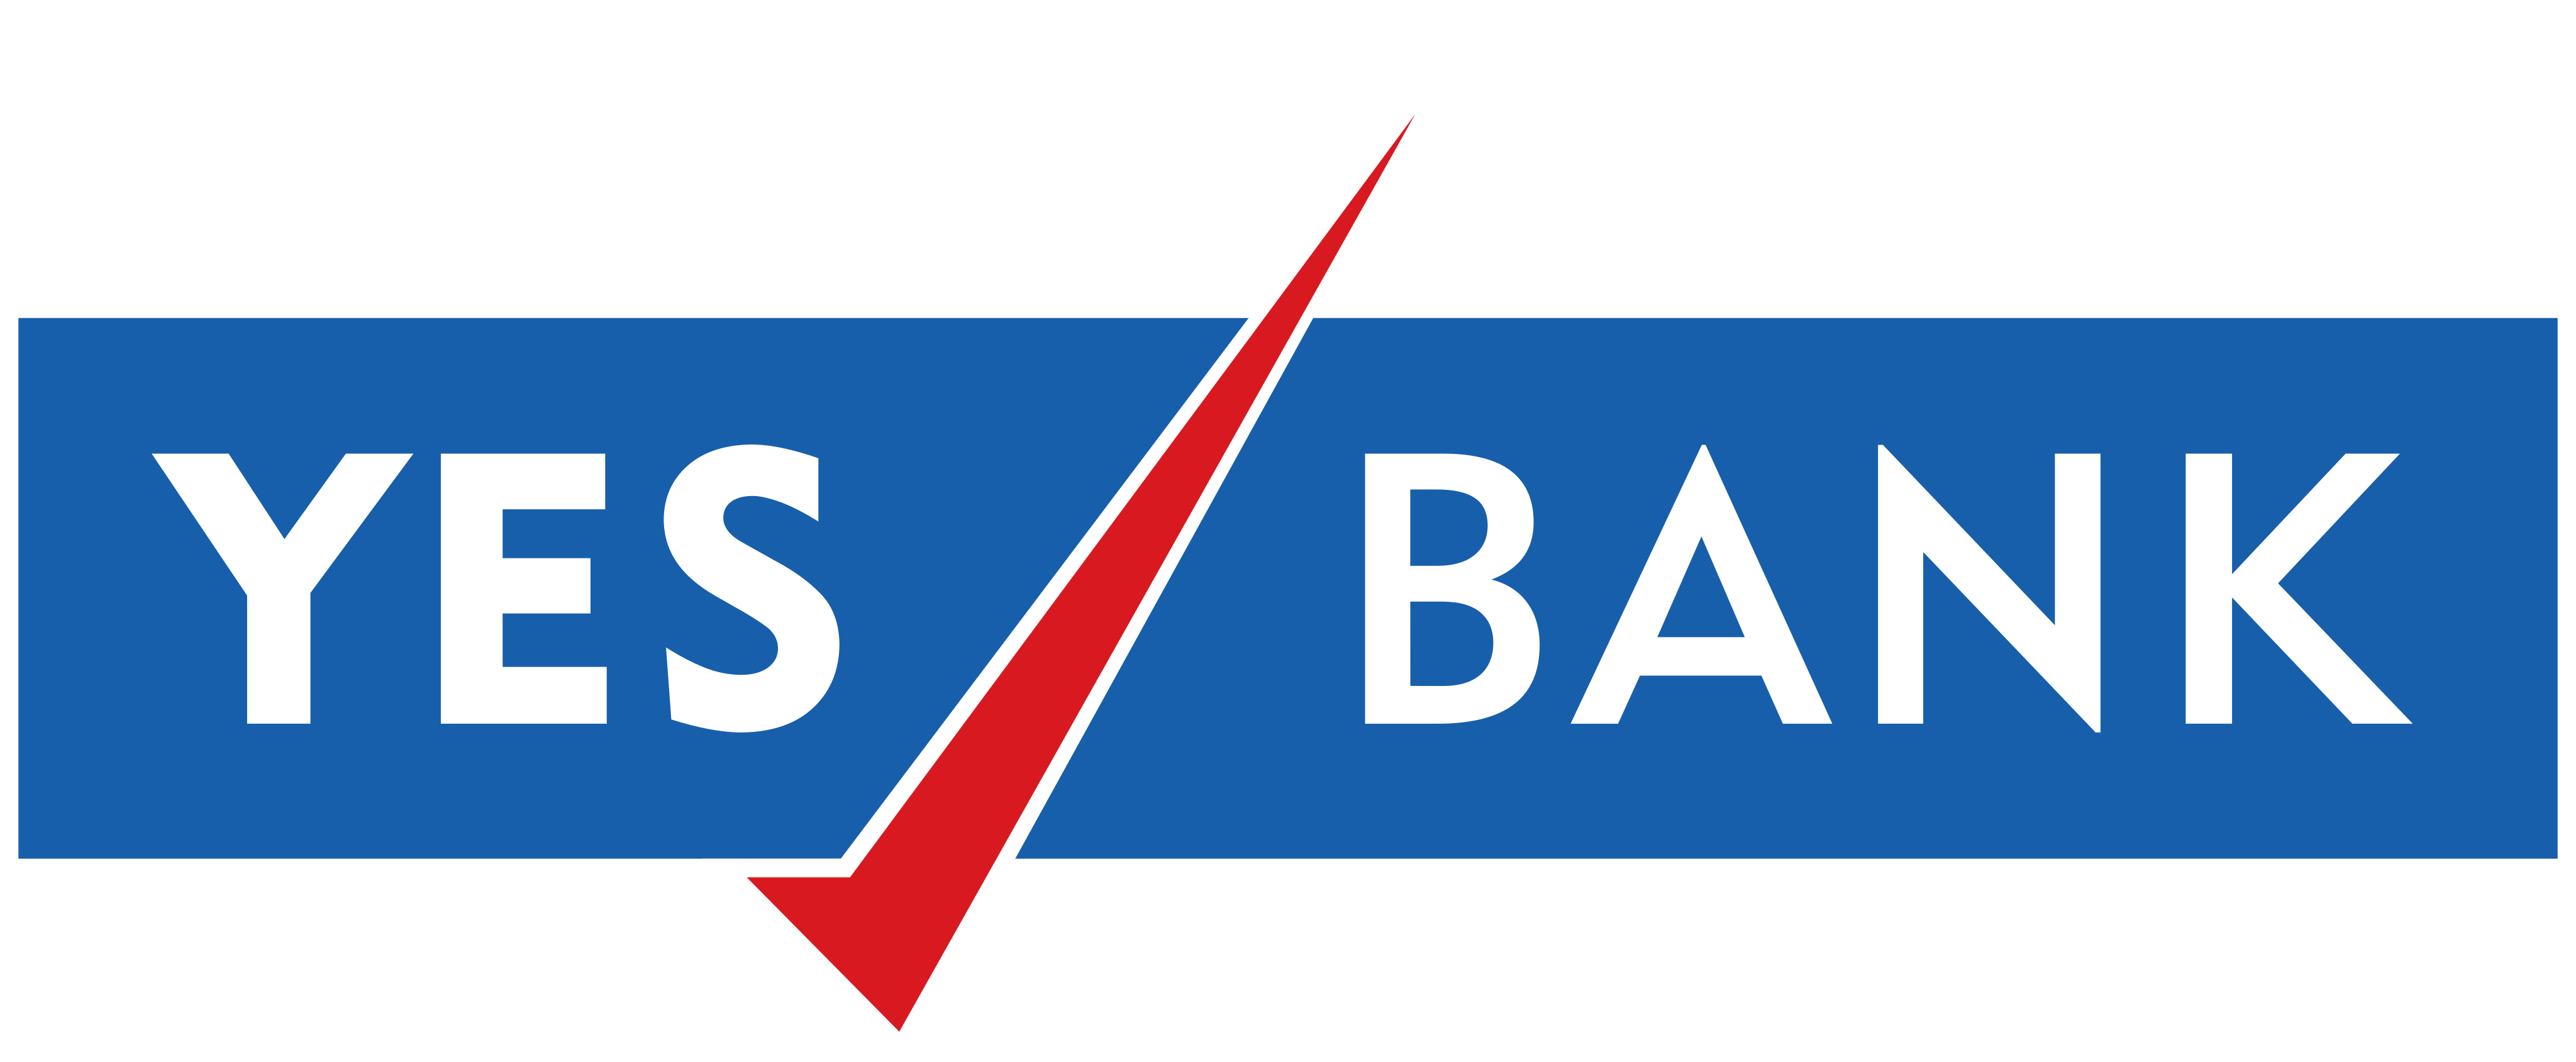 yes bank logo - Yes Bank Logo